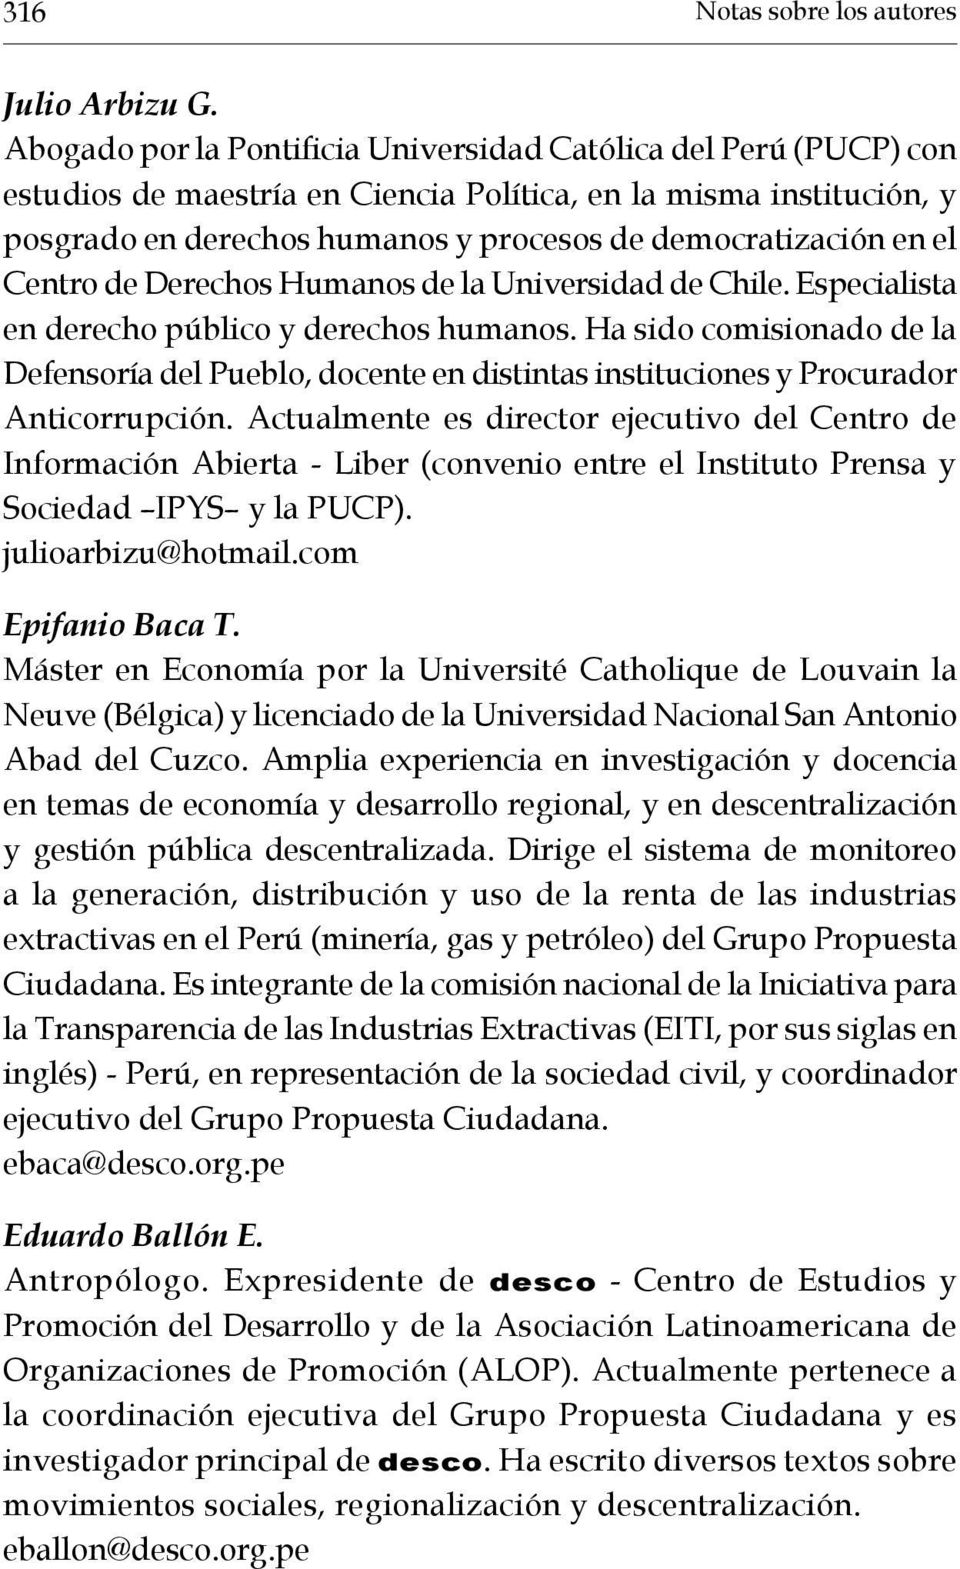 el Centro de Derechos Humanos de la Universidad de Chile. Especialista en derecho público y derechos humanos.